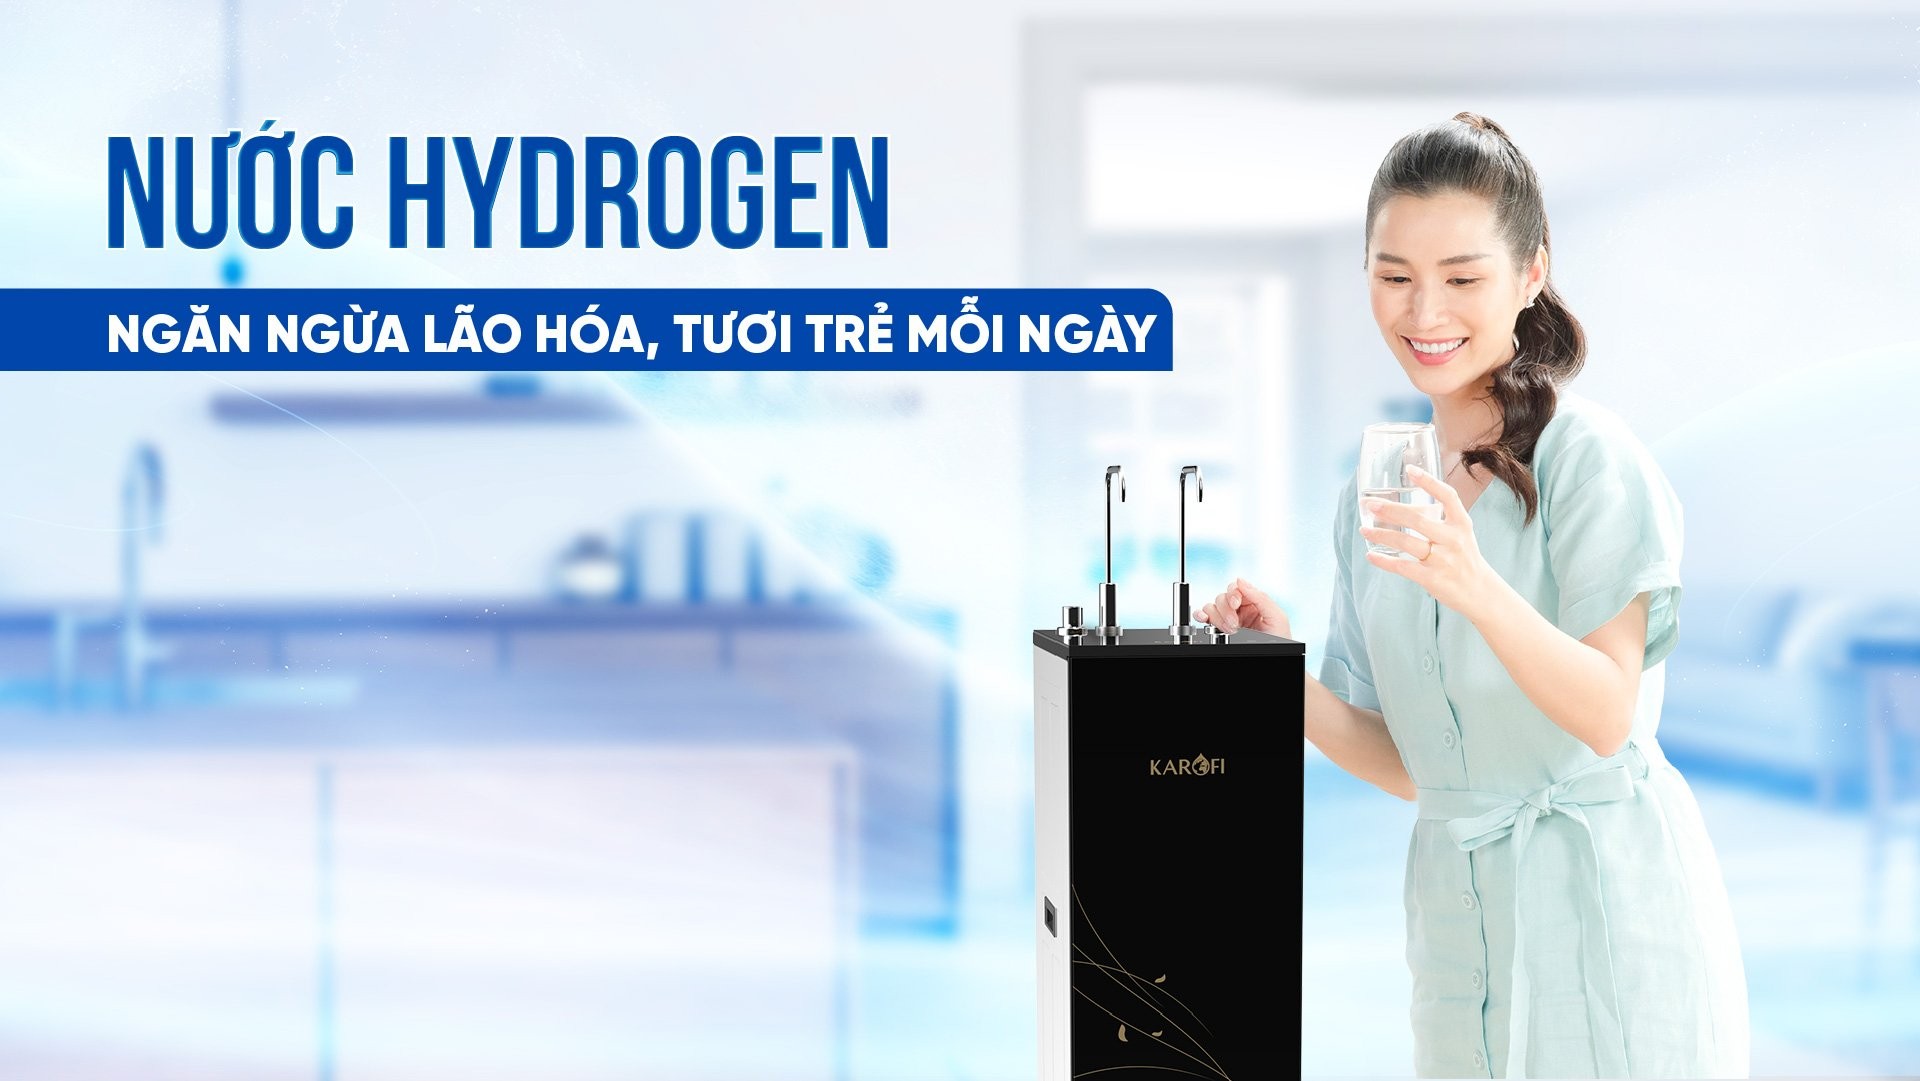 Máy lọc nước nóng lạnh Karofi KHY-TN86 - Chế độ nước Hydrogen: Ngăn ngừa lão hóa, tươi trẻ mỗi ngày